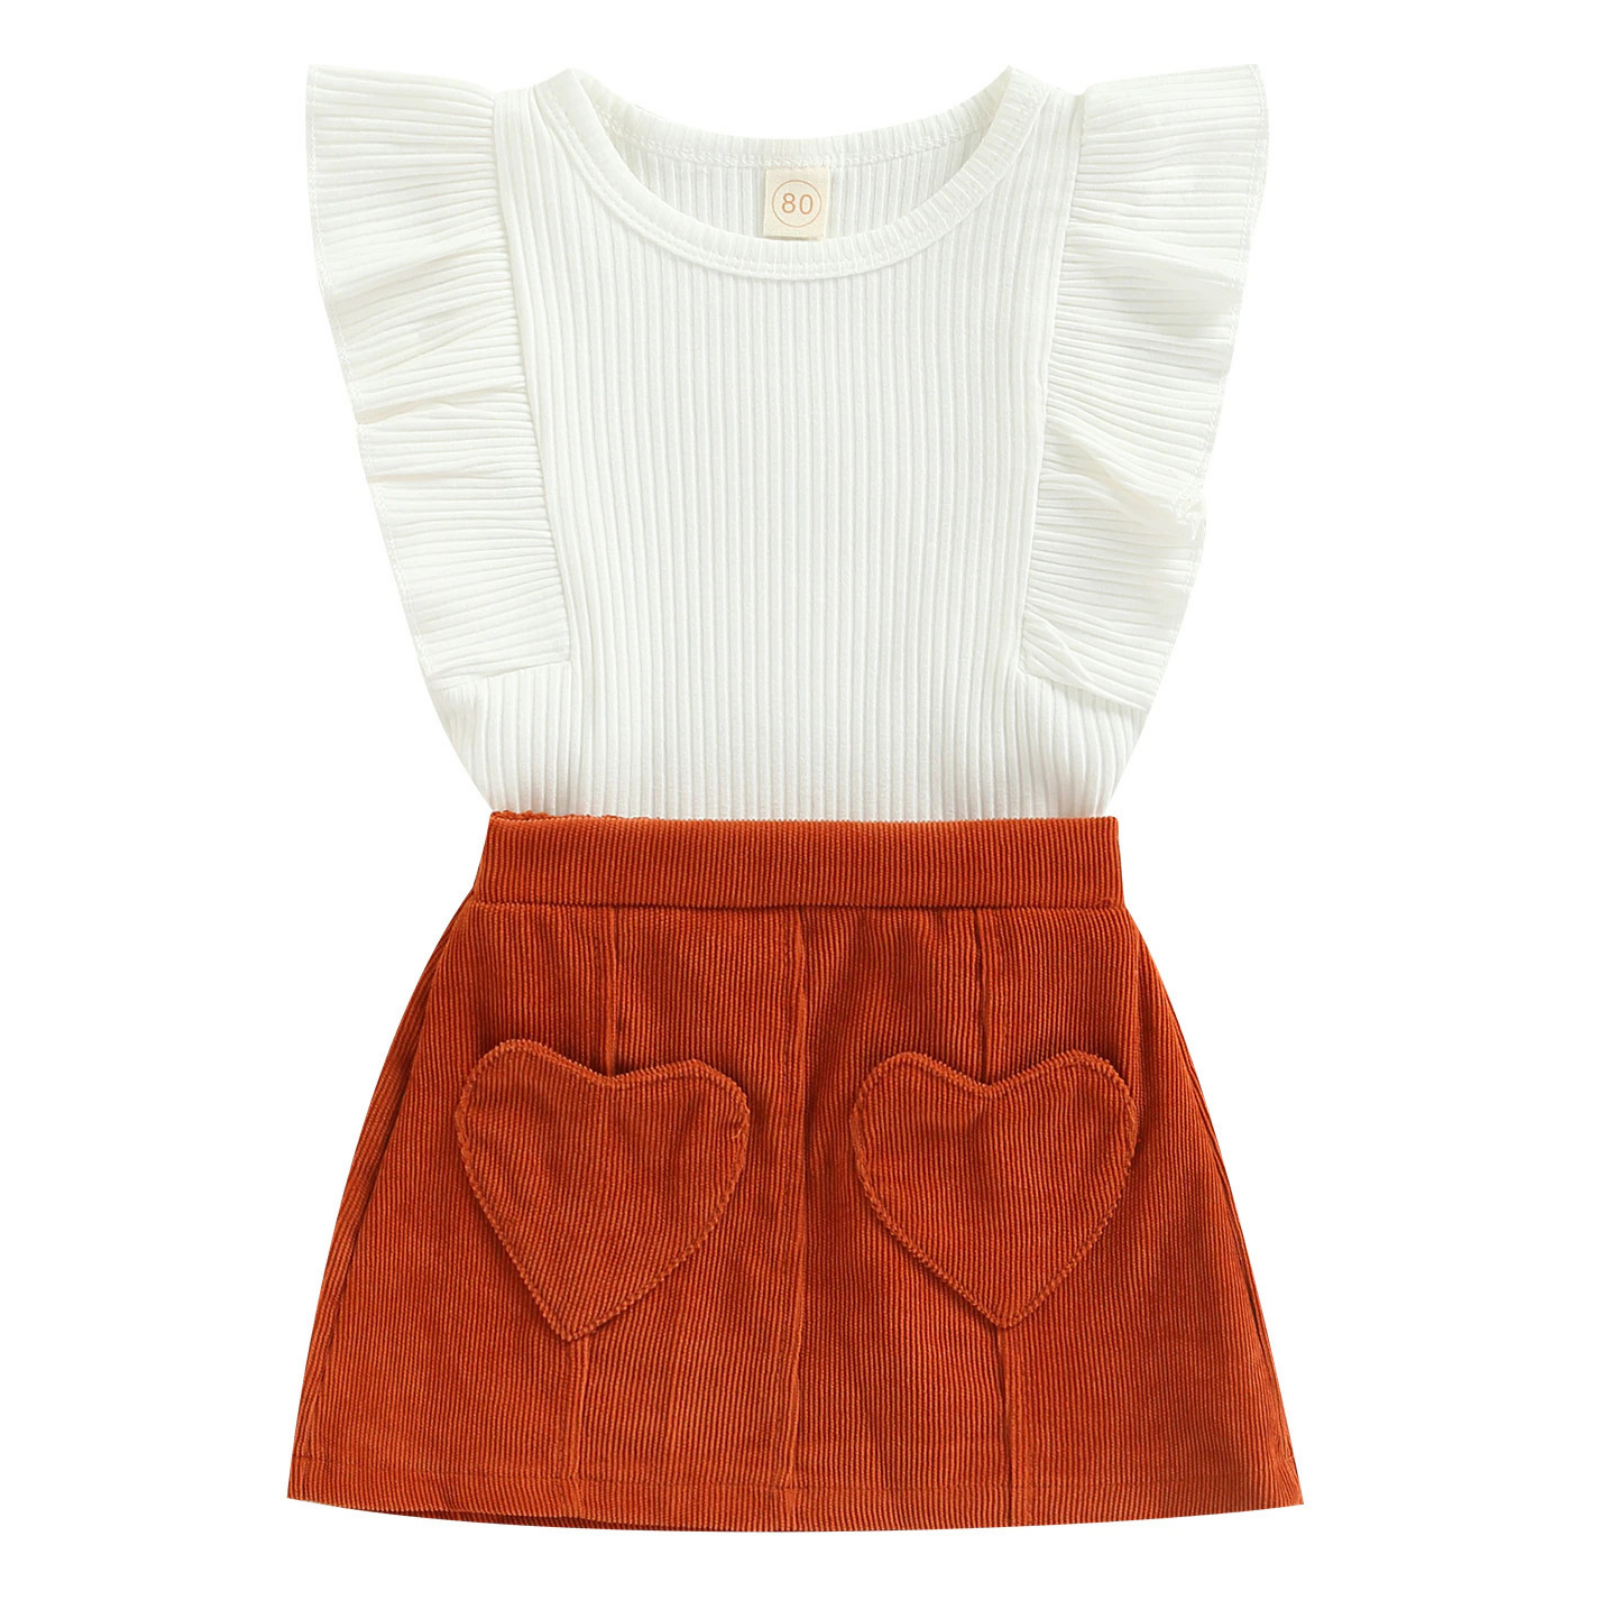 Ruffled Top & Heart Skirt Set